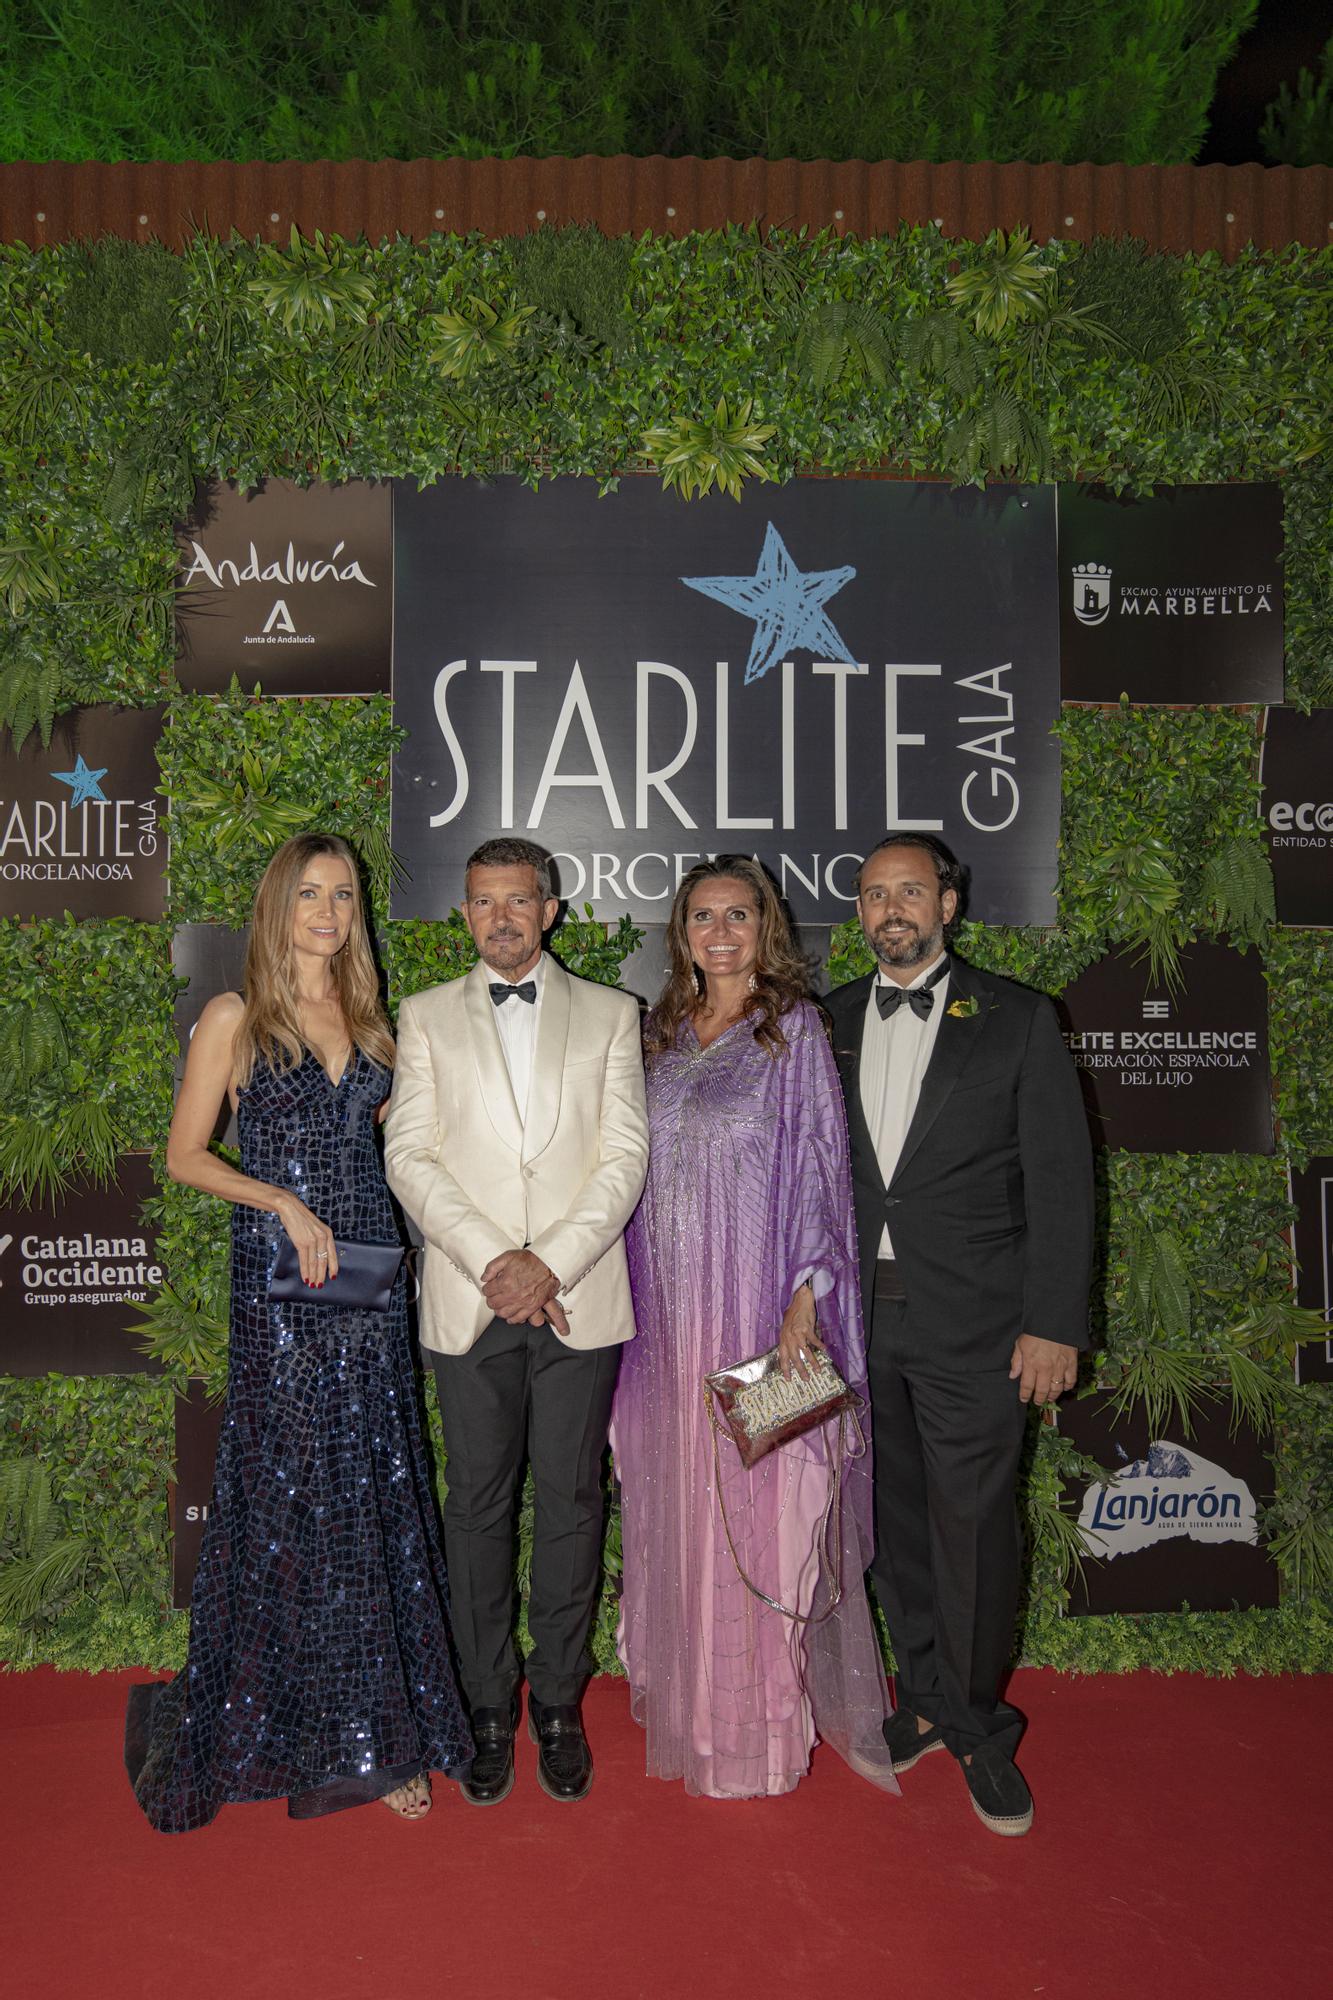 La gala Starlite Porcelanosa centra la atención de la vida social española